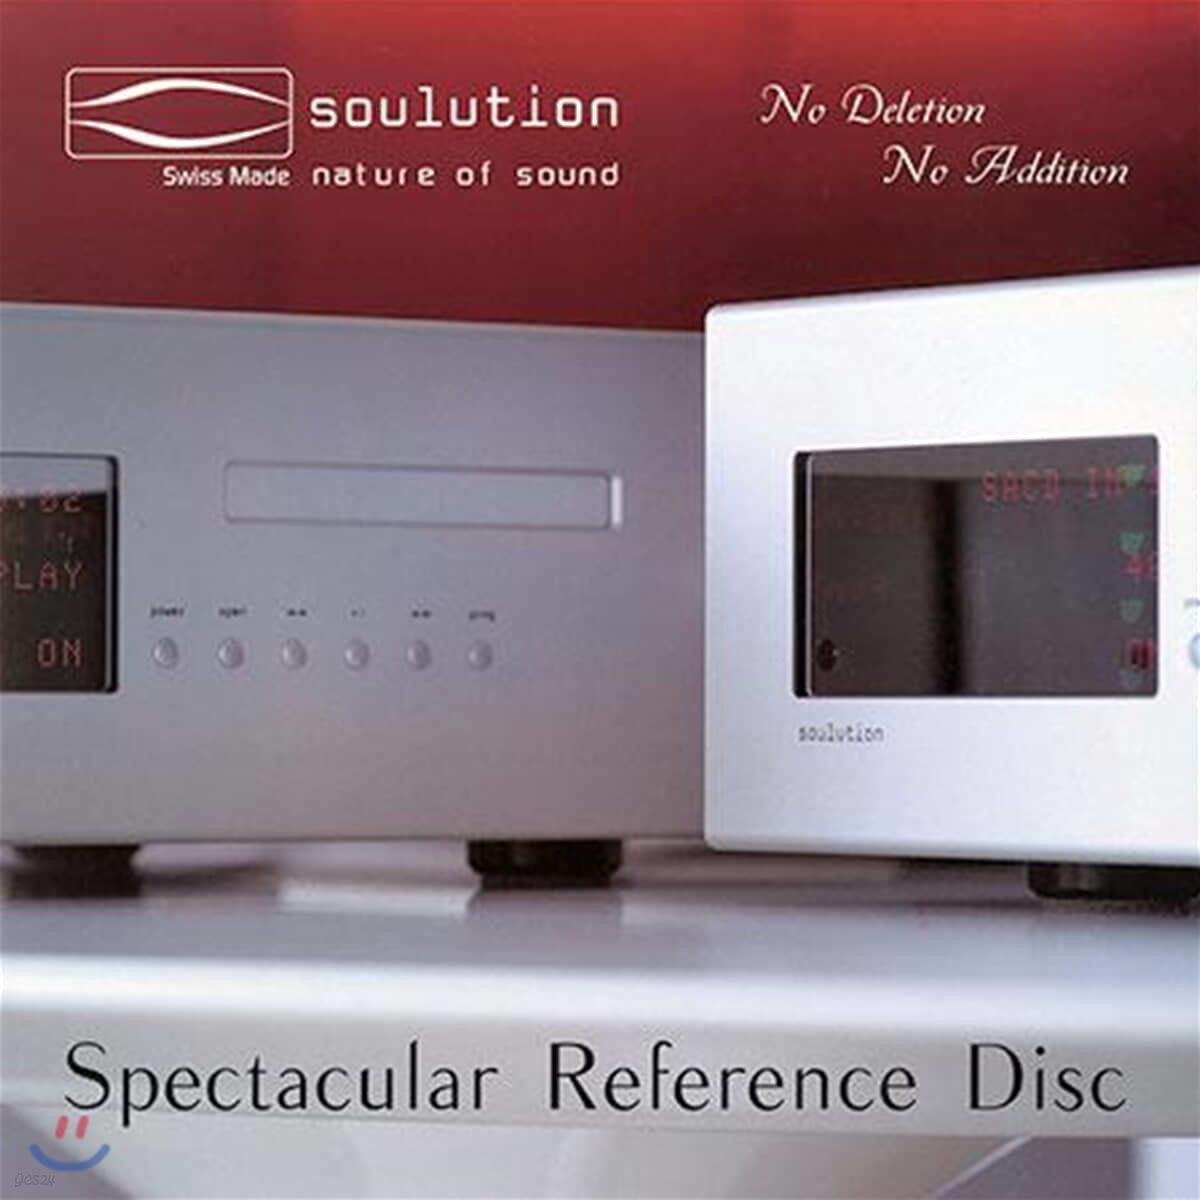 오디오 테스트용 앨범 (Soulution - Spectacular Reference Disc) [LP]